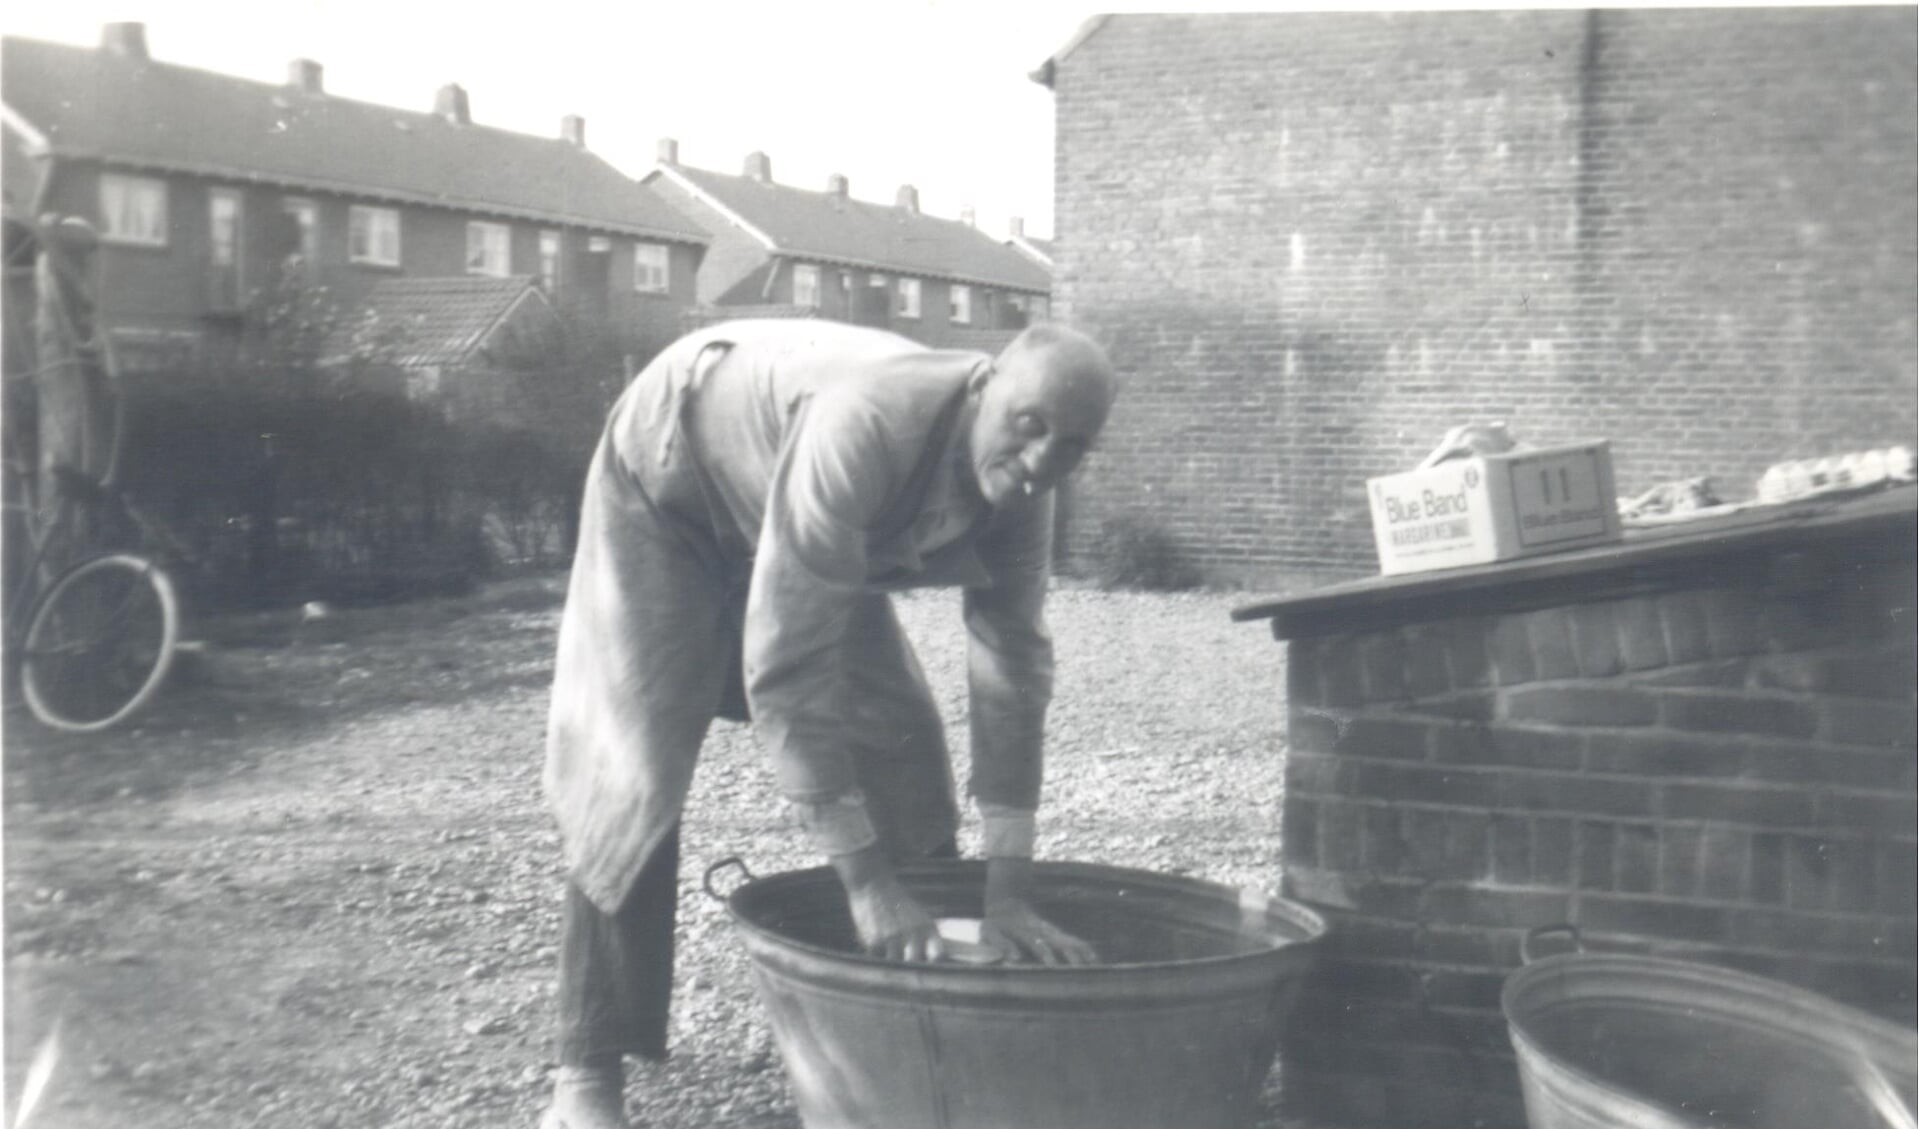 Kaasboer Oskam bezig met het wassen van kazen